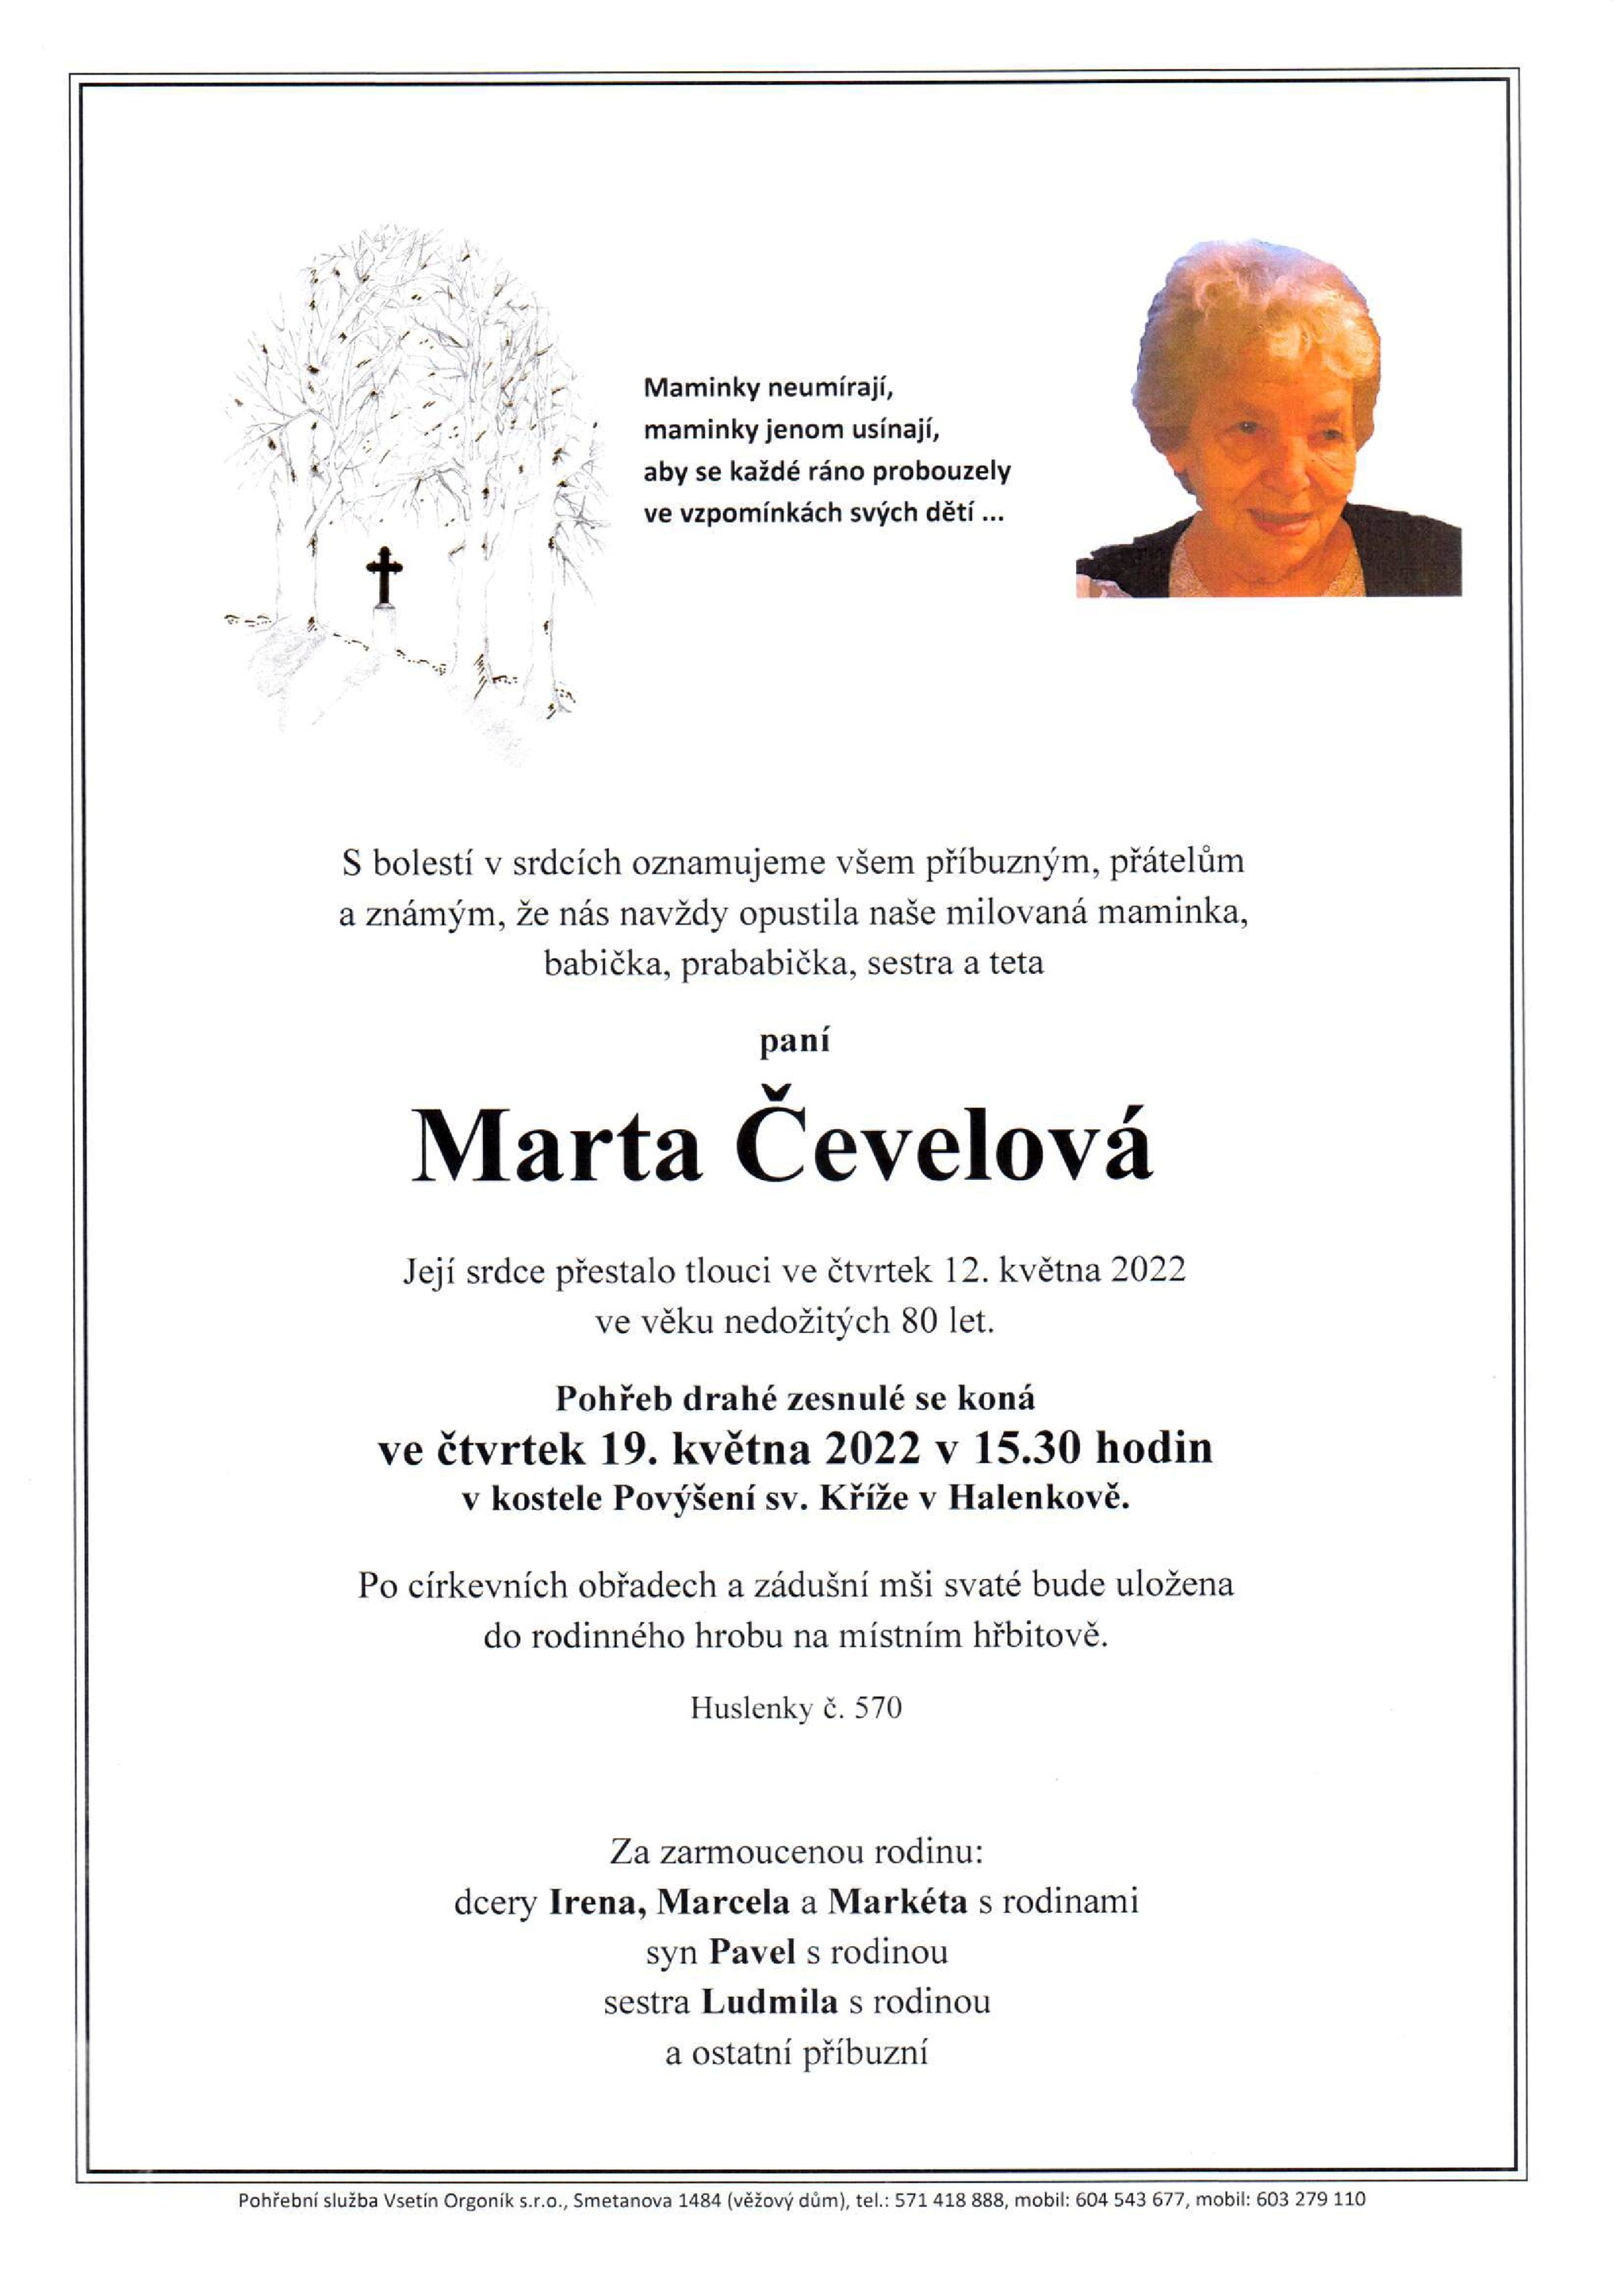 Marta Čevelová